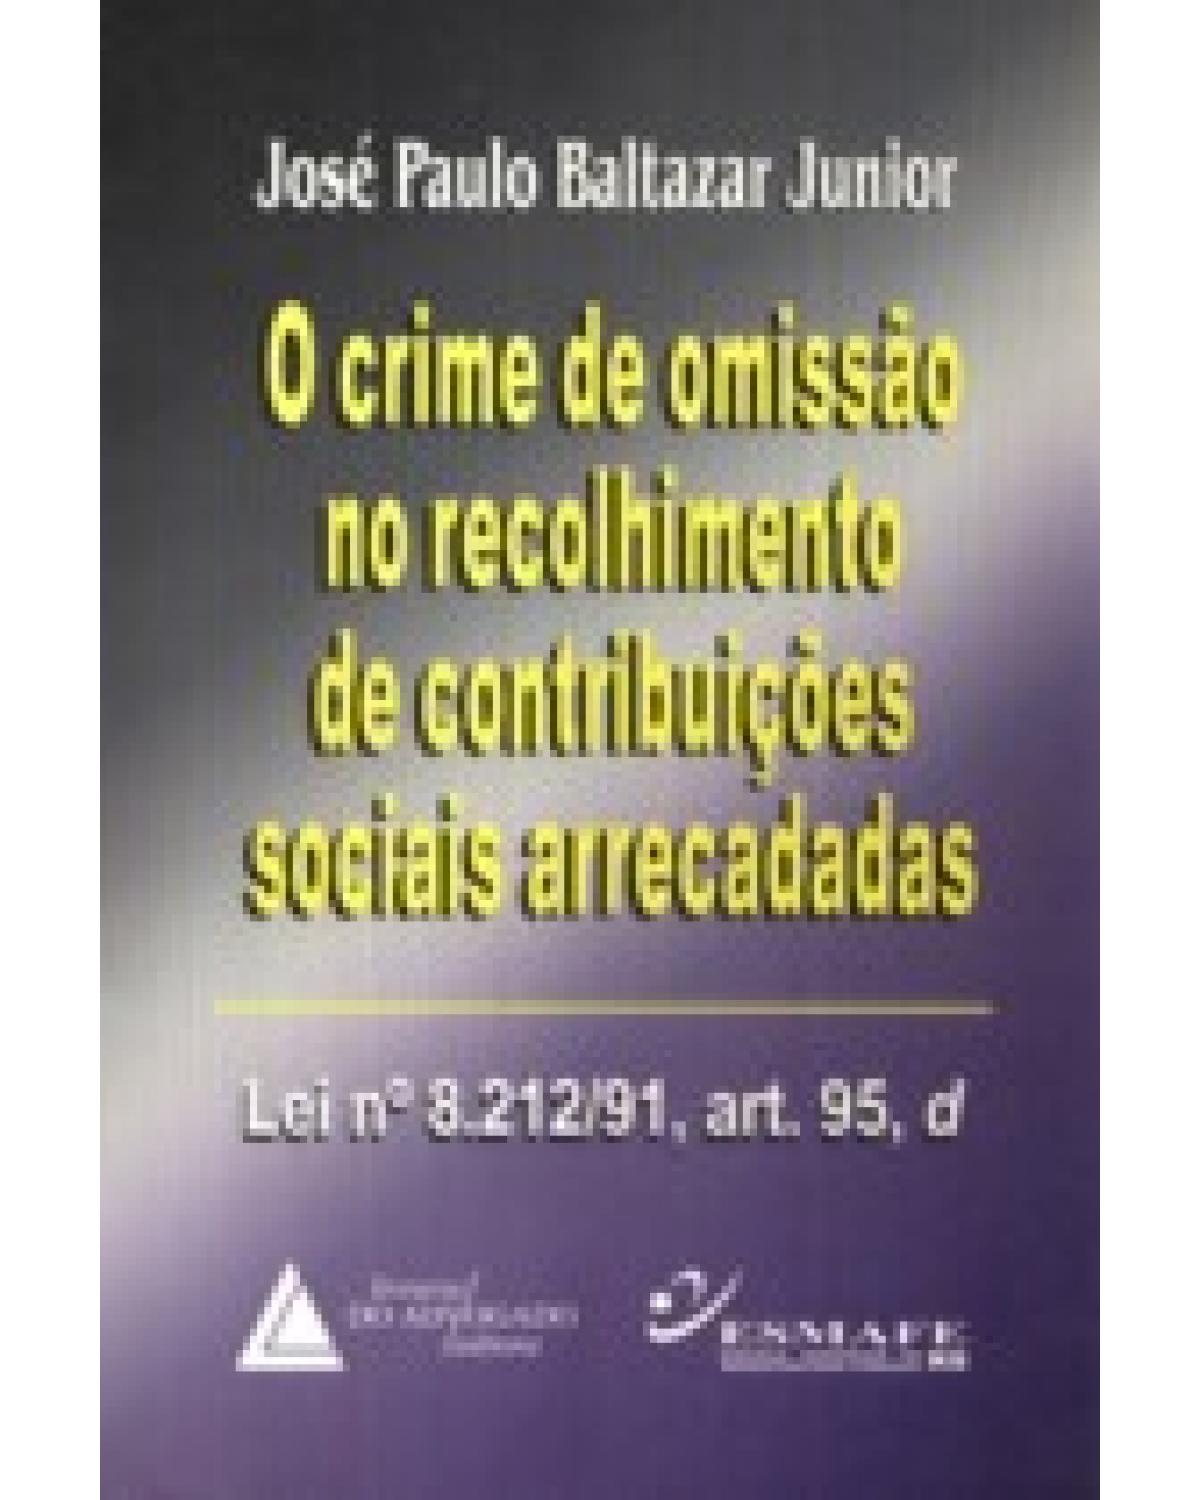 O crime de omissão no recolhimento de contribuições sociais arrecadadas: Lei n° 8.212/91, art.95, d - 1ª Edição | 1999